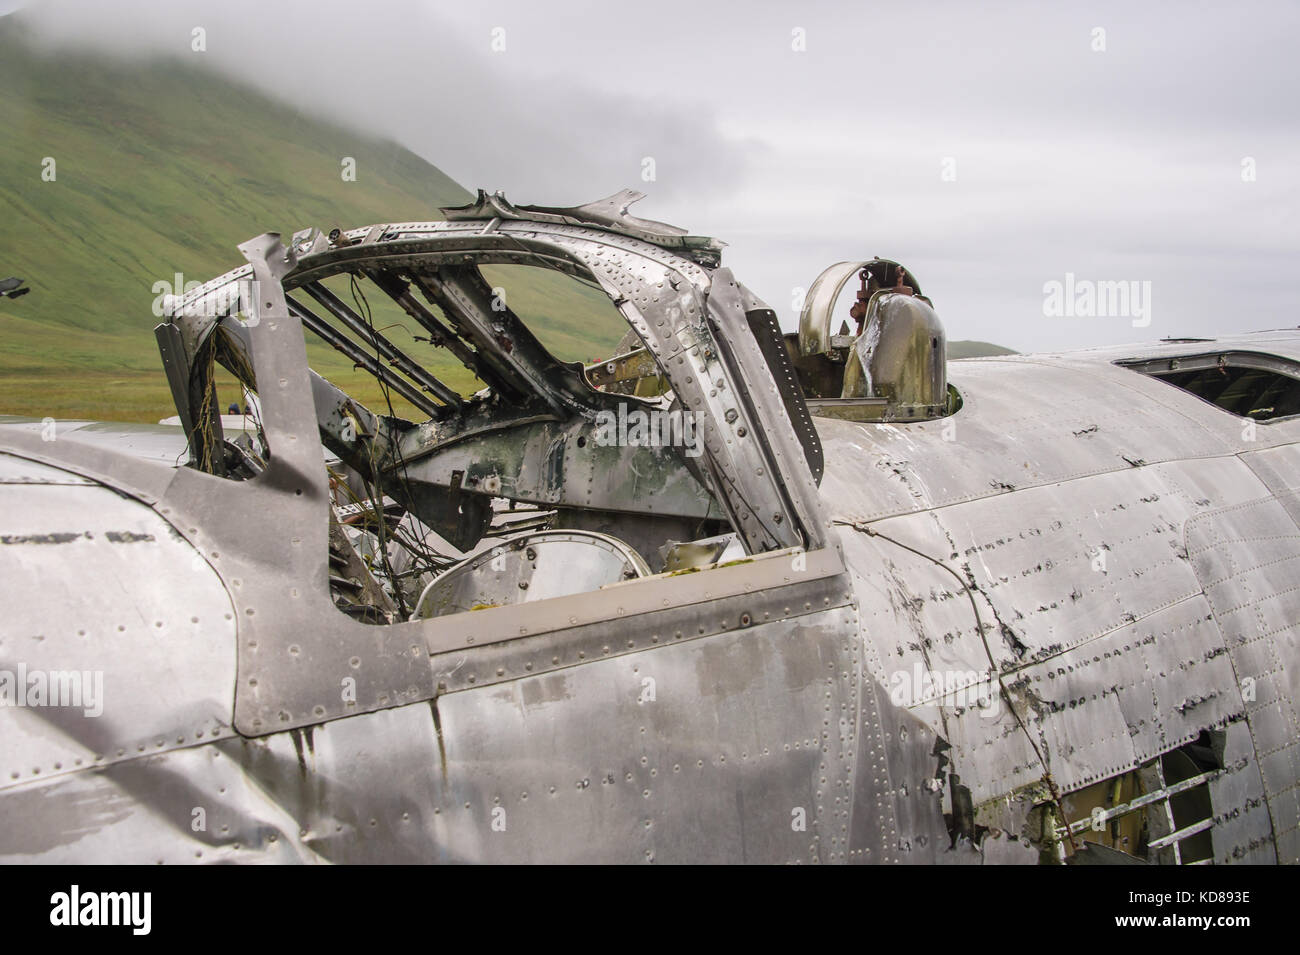 Eins von nur zwei bekannten verbleibenden b-24 Wracks auf Atka Island, Aleuten, Alaska. Es war creash am 9 Dez 1942 gelandet, ohne Verlust der Besatzung. Stockfoto